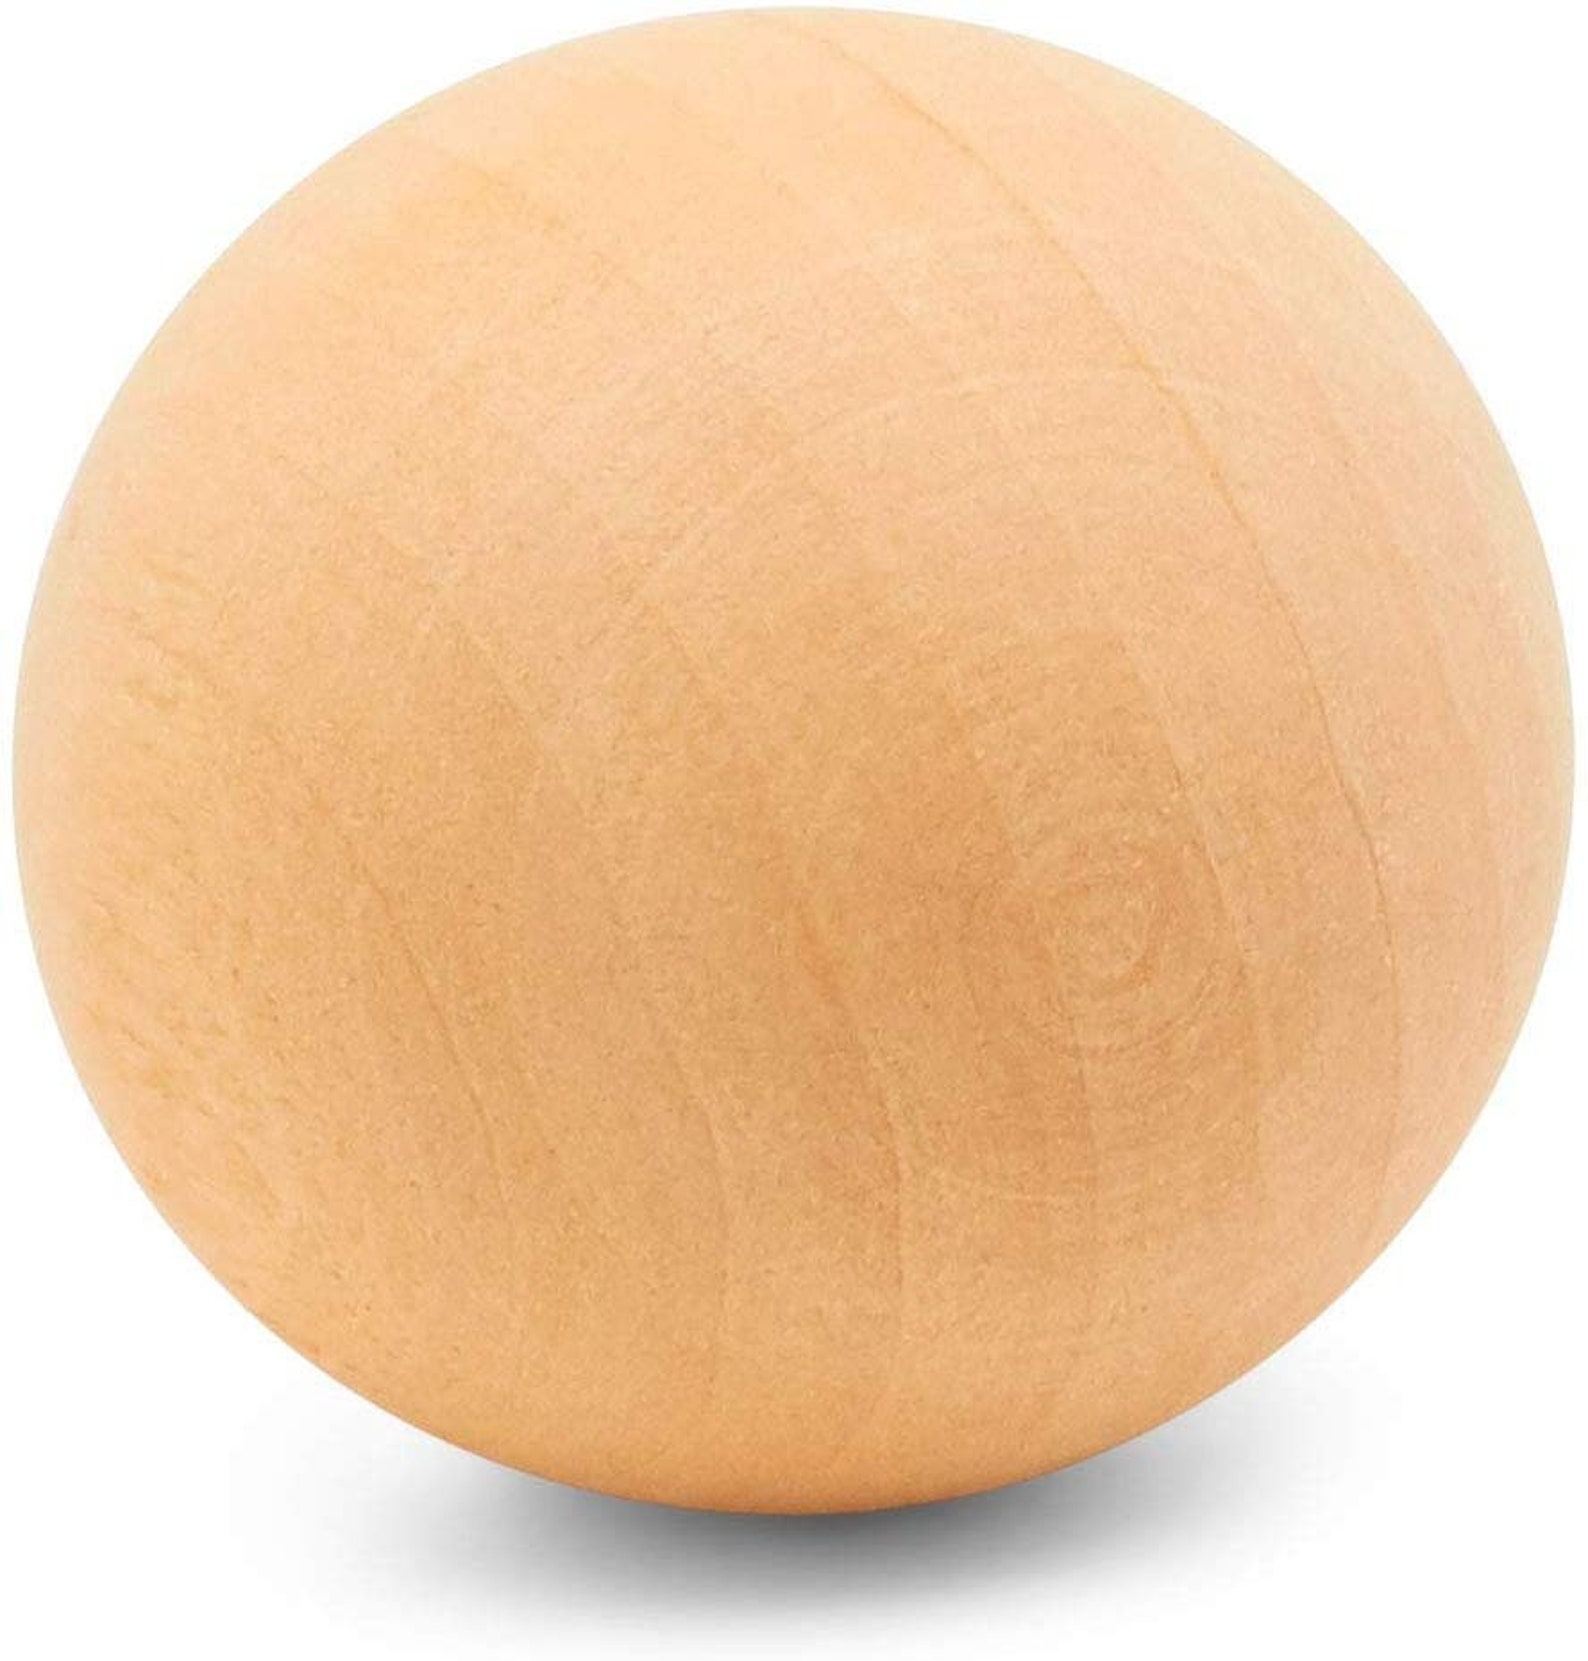 Round ball. Деревянный шарик. Деревянные овальные шарики. Деревянная сфера. Пустая сфера из дерева.